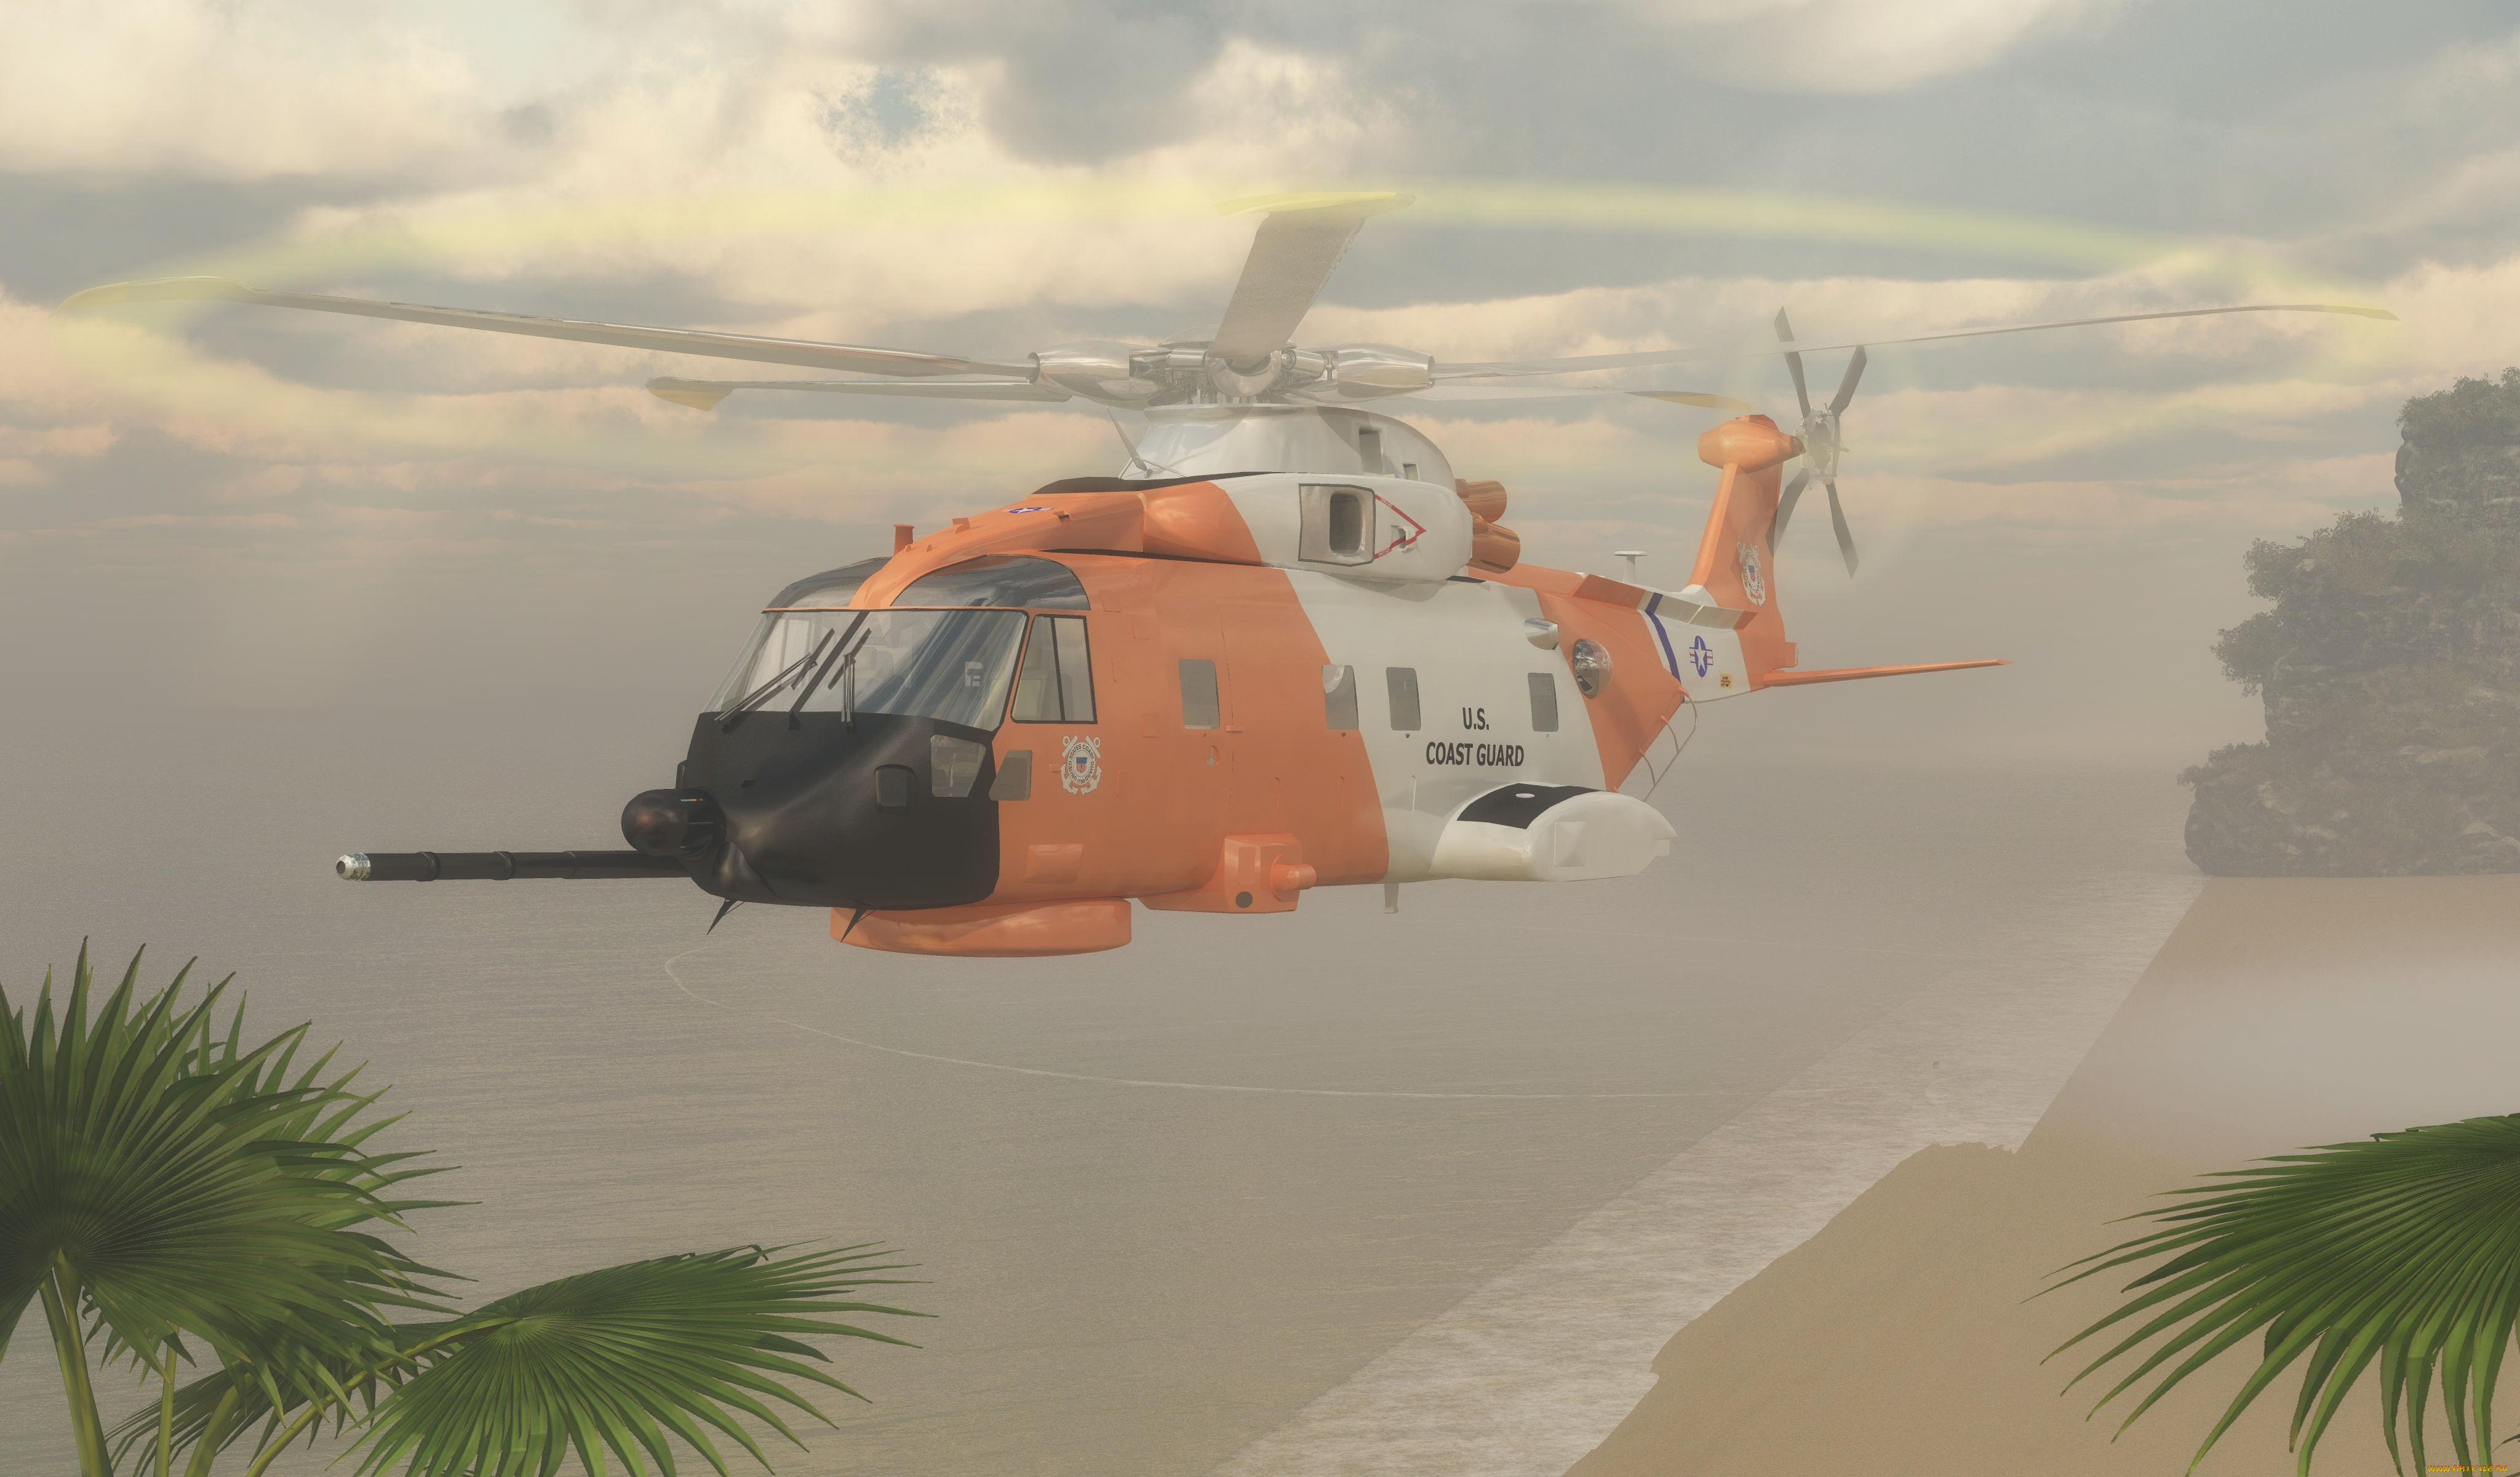 авиация, 3д, рисованые, v-graphic, вертолет, море, пальмы